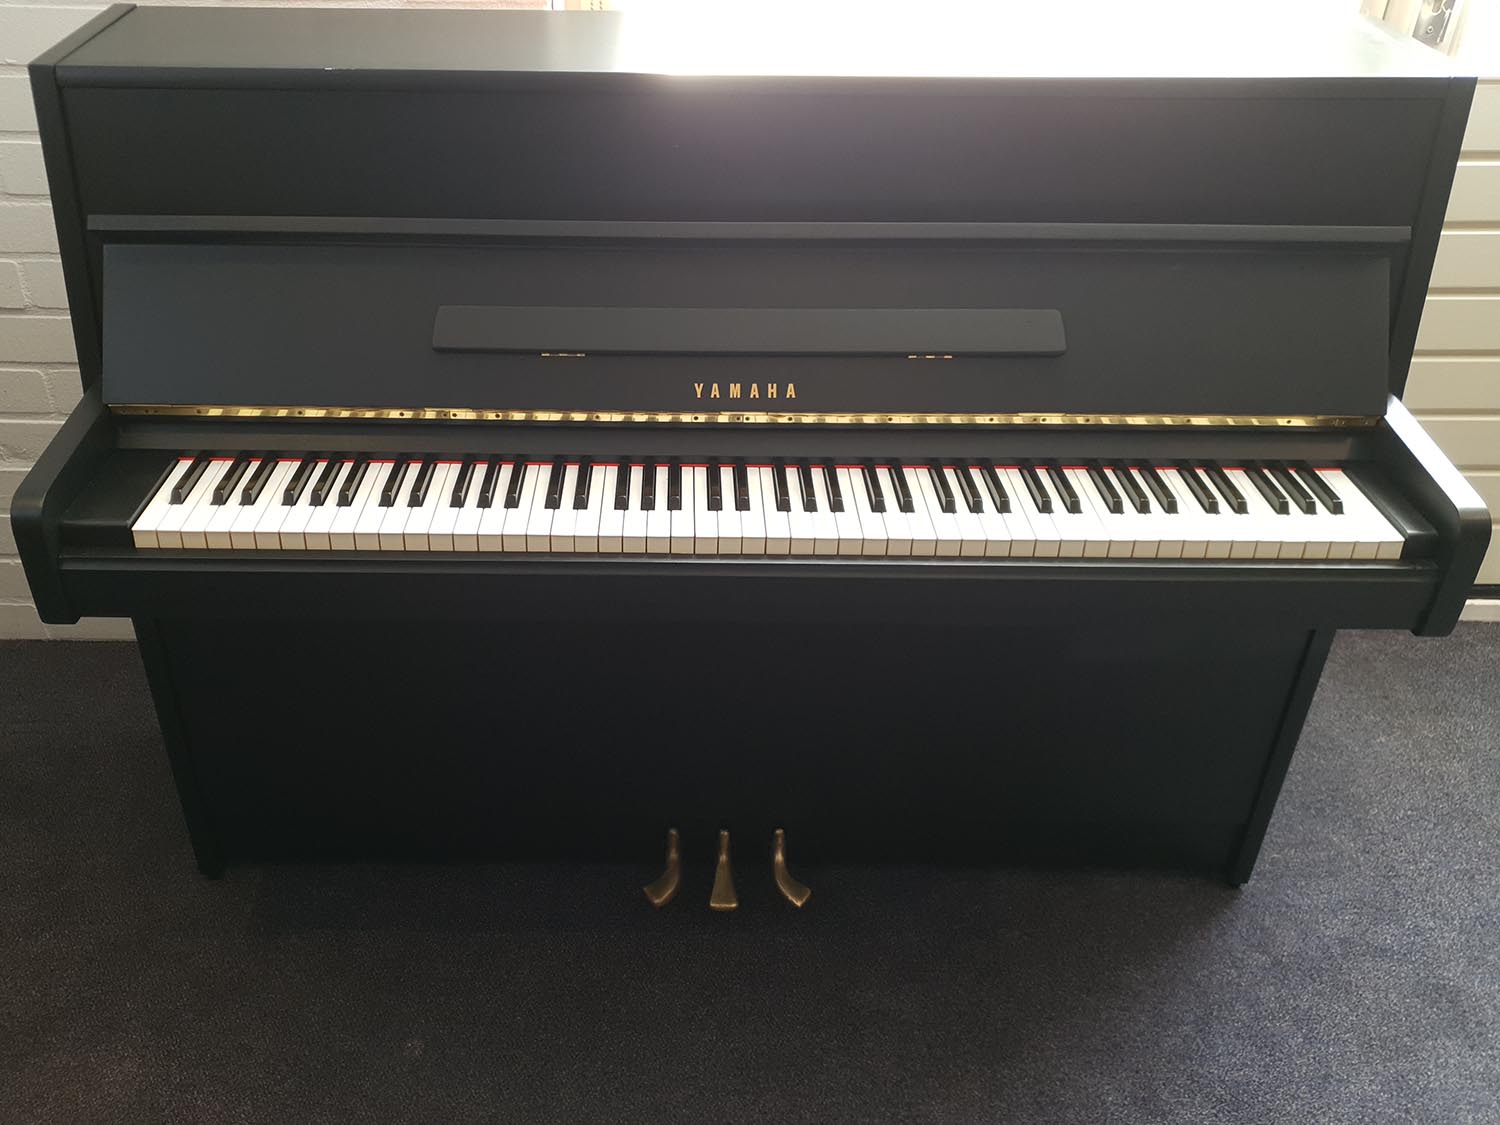 Sloot Pianoservice: Yamaha 108